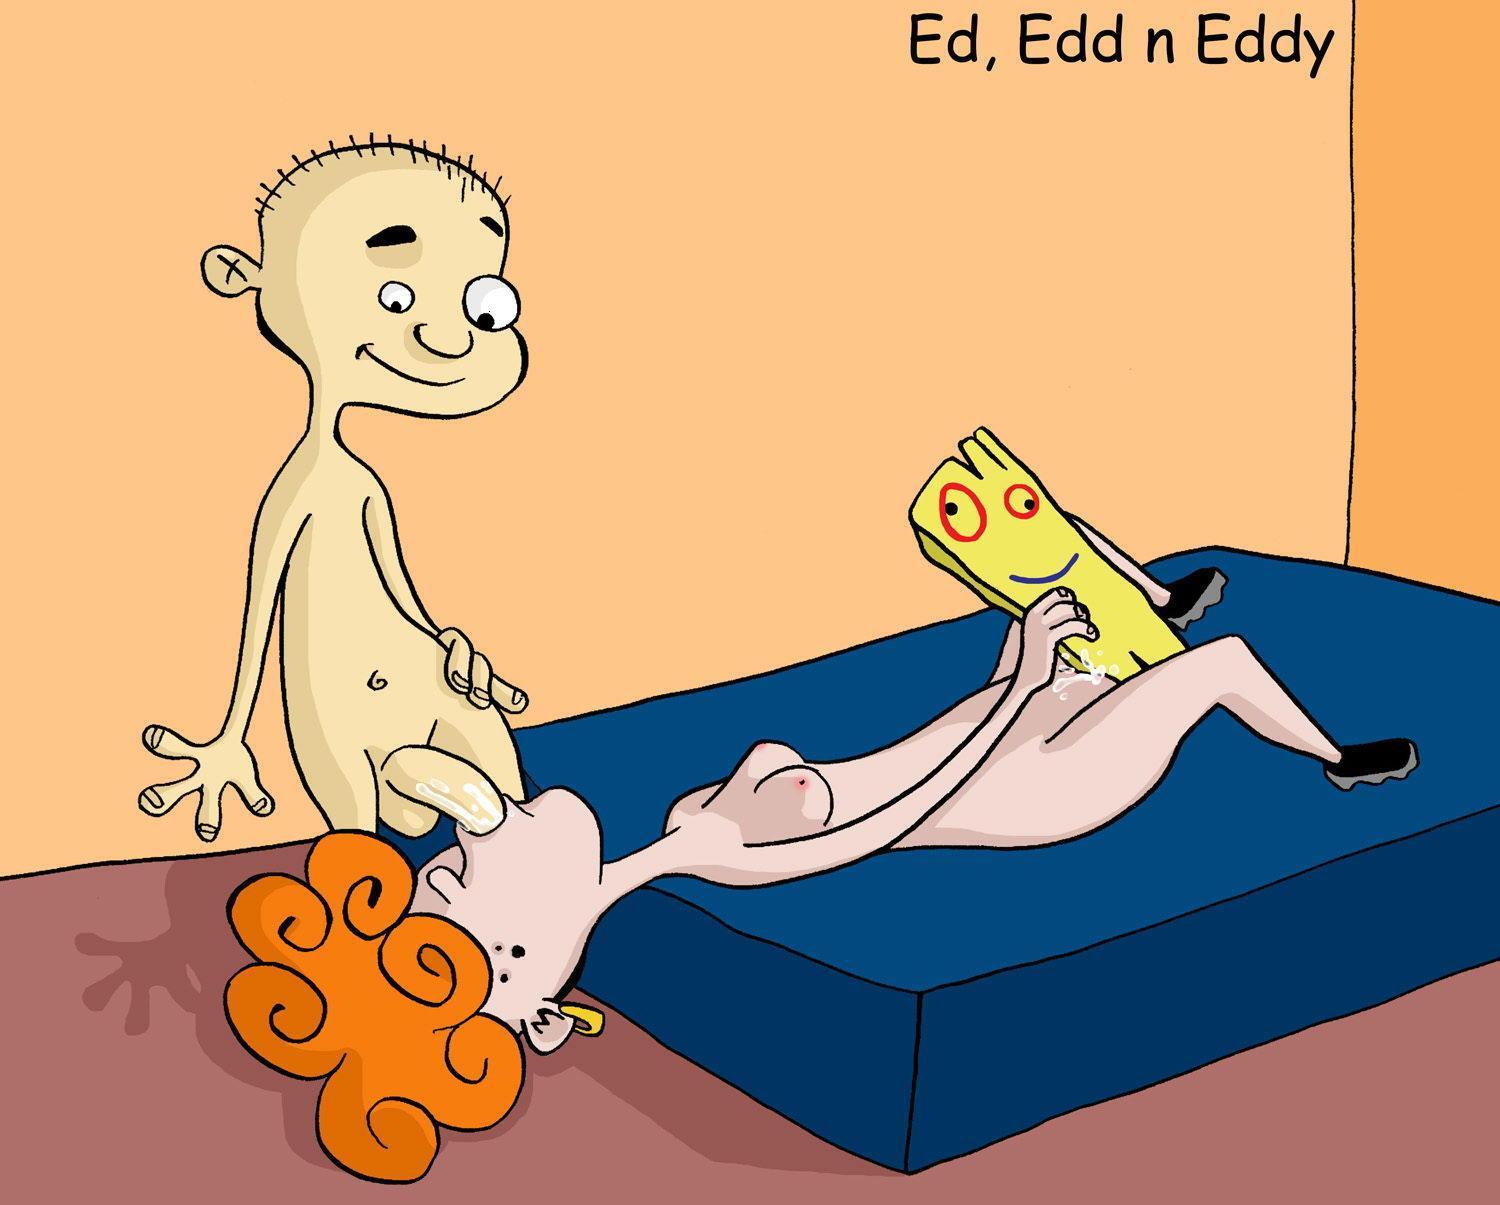 Ed edd n eddy having sex